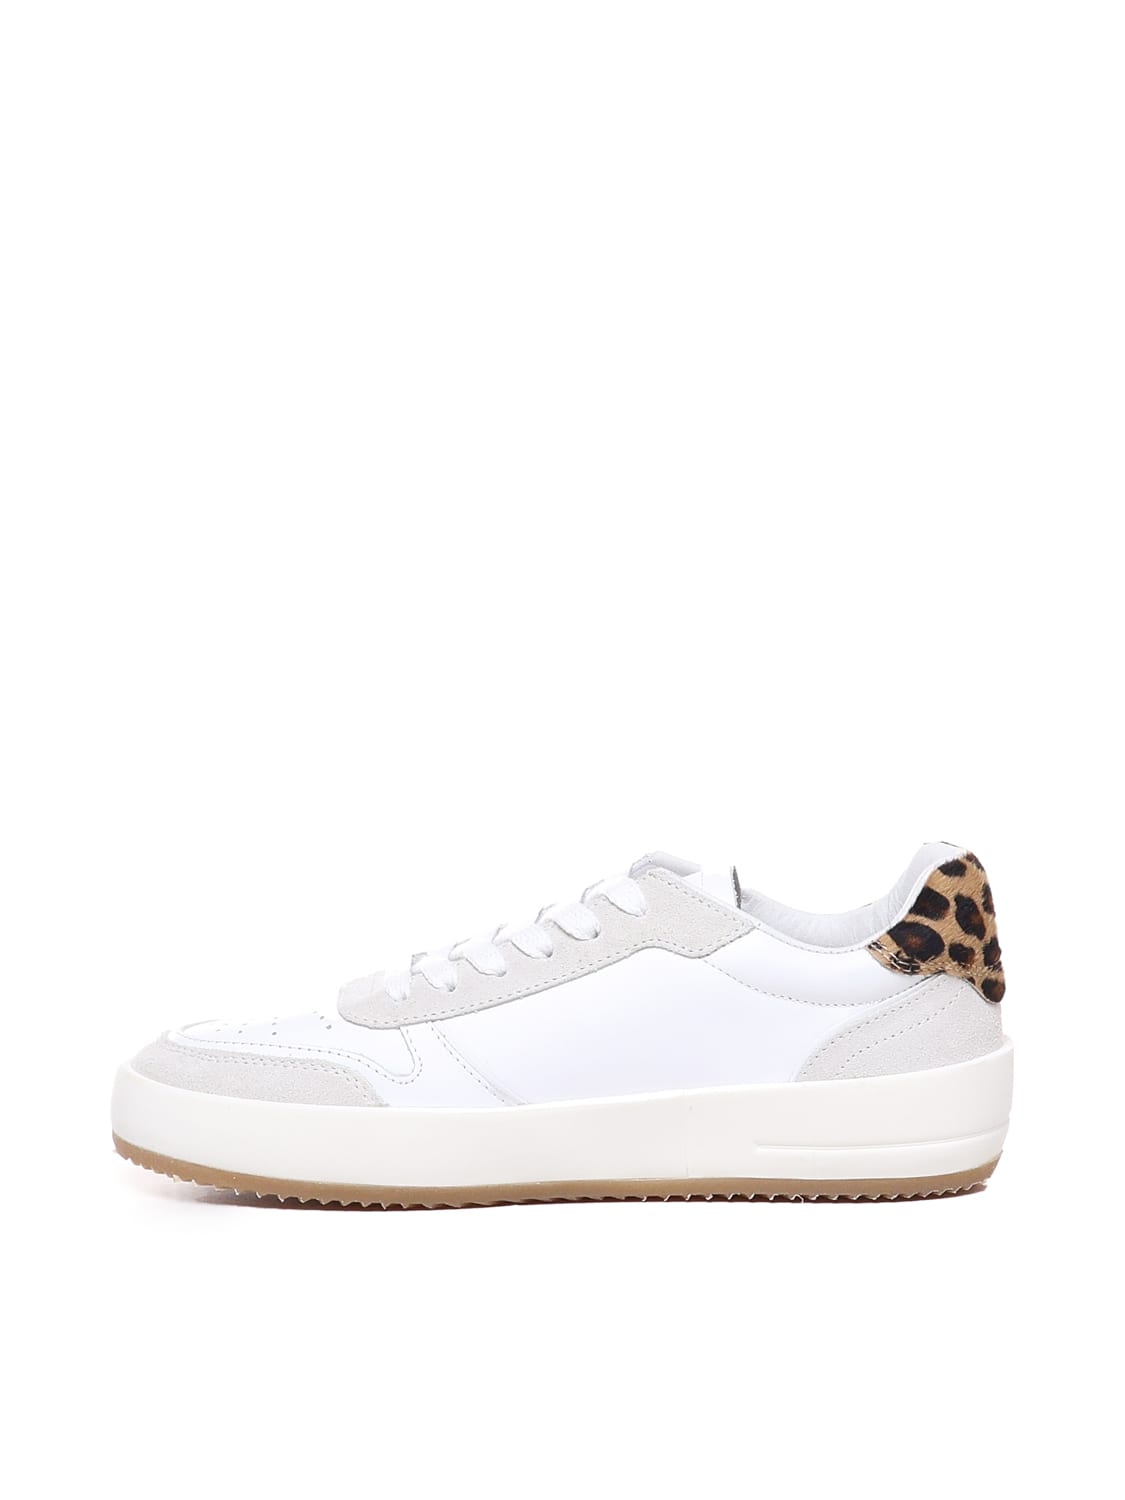 Shop Philippe Model Nice Low Sneaker In White, Leopard